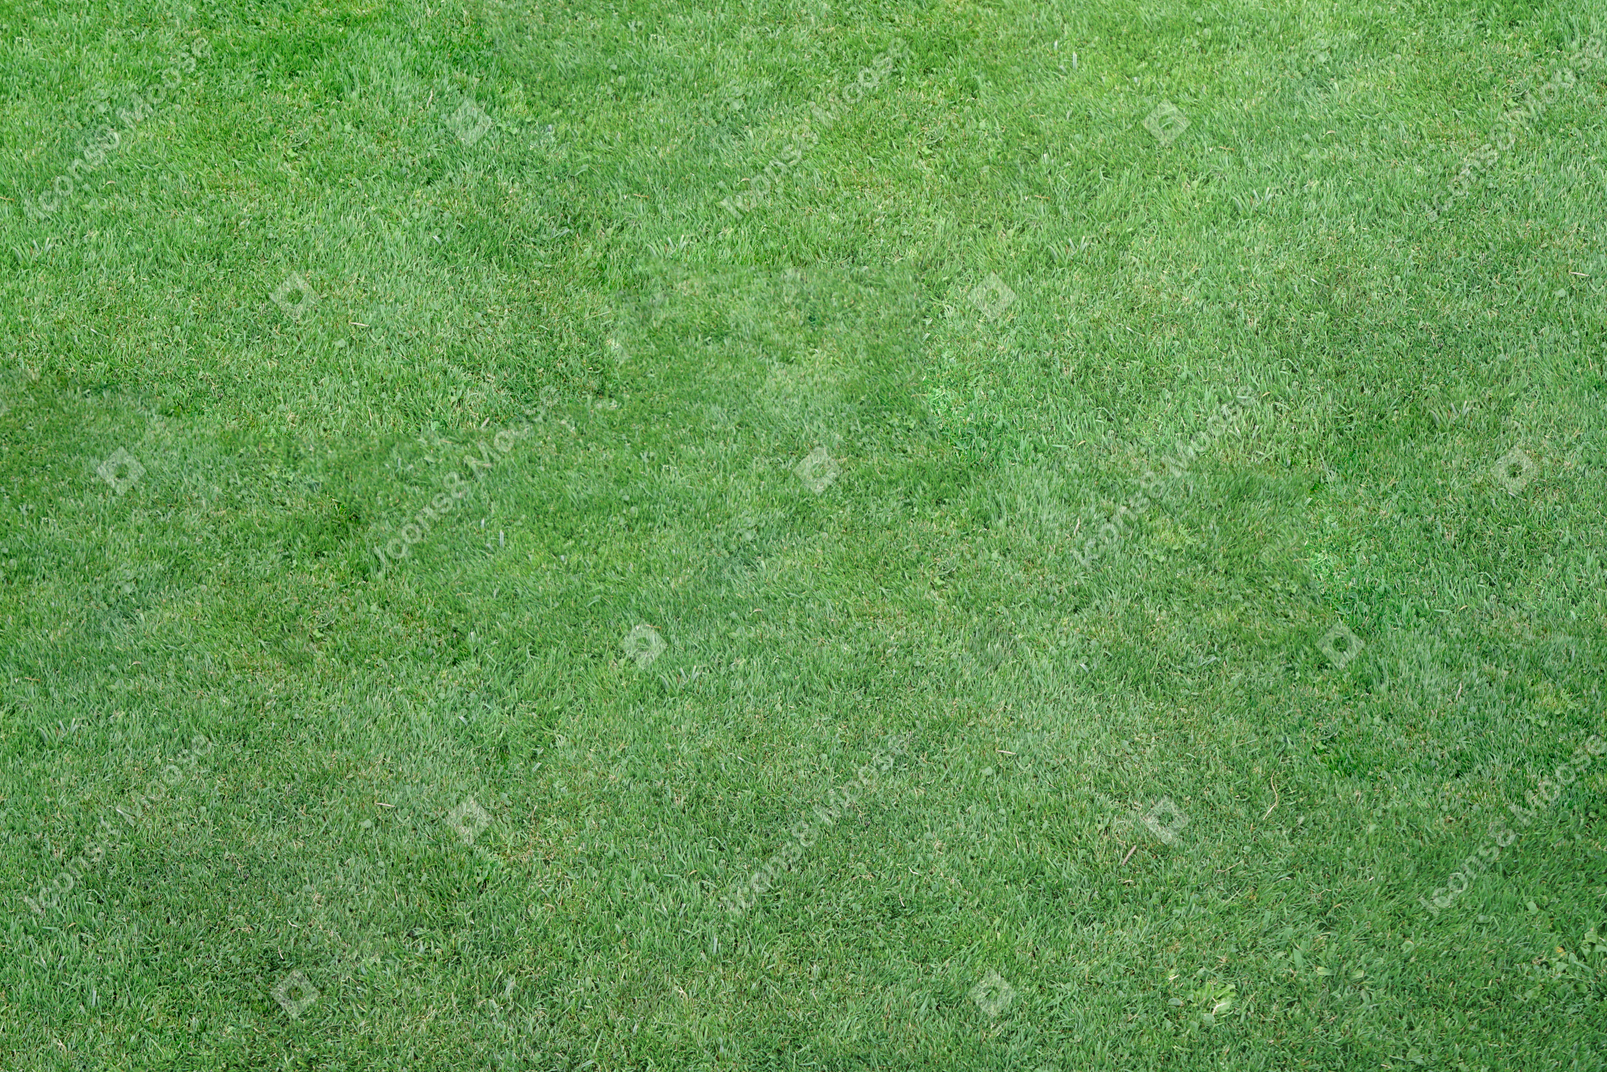 Teppich aus grünem gras